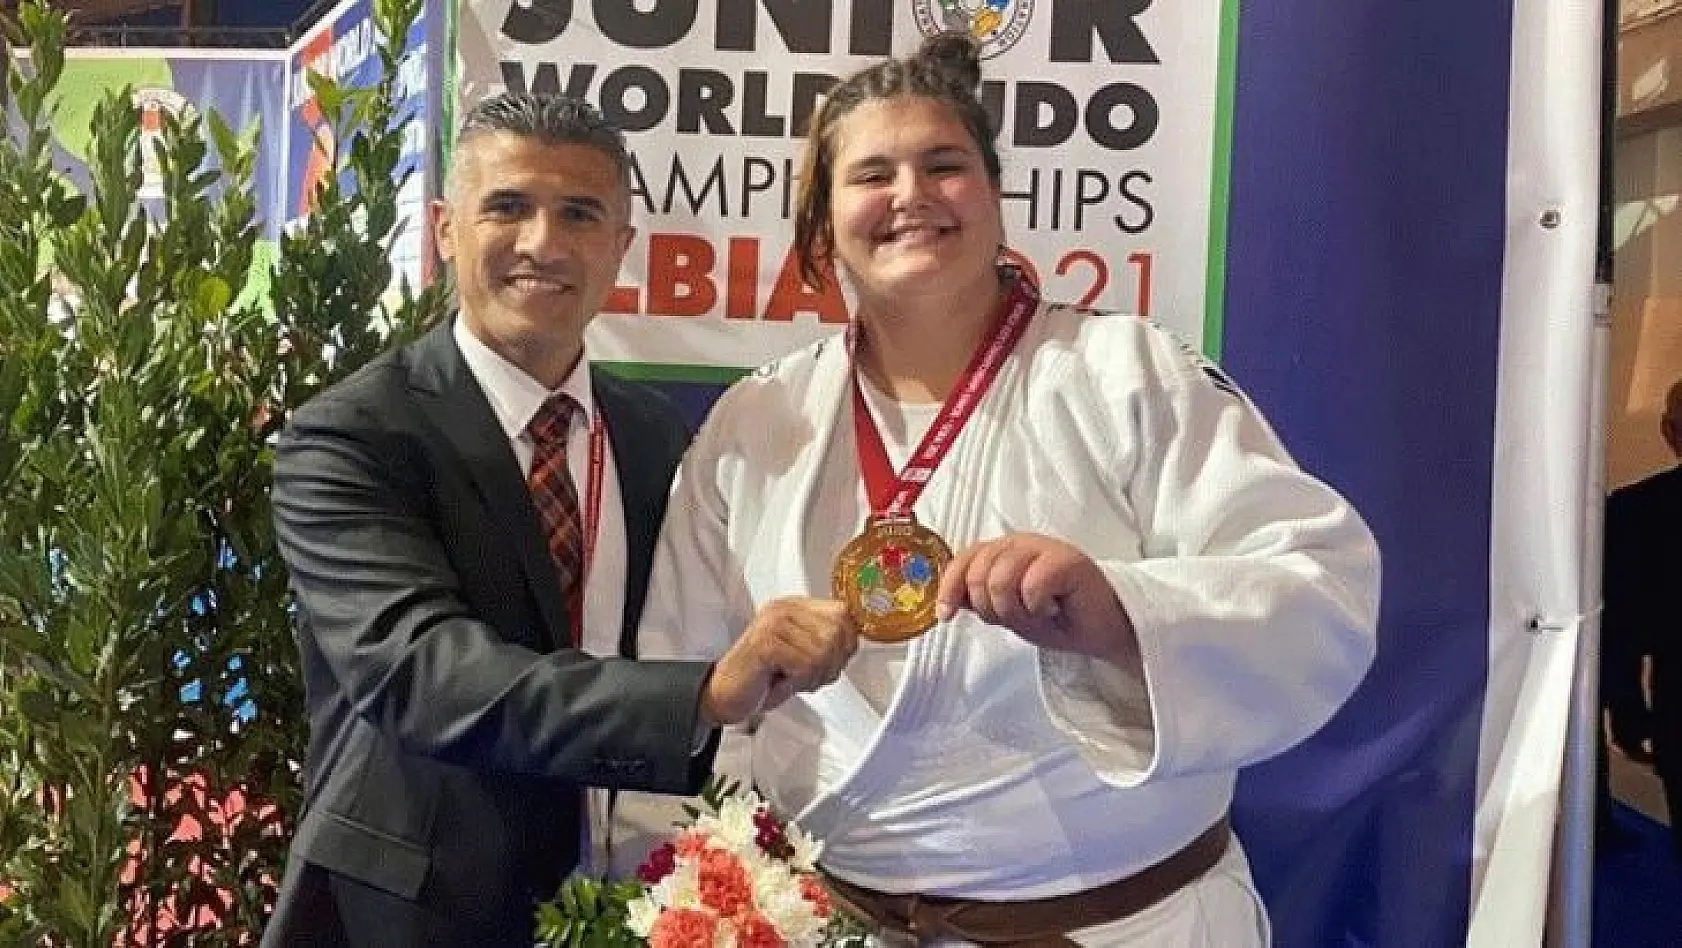 Milli judocu Hilal Öztürk dünya üçüncüsü oldu